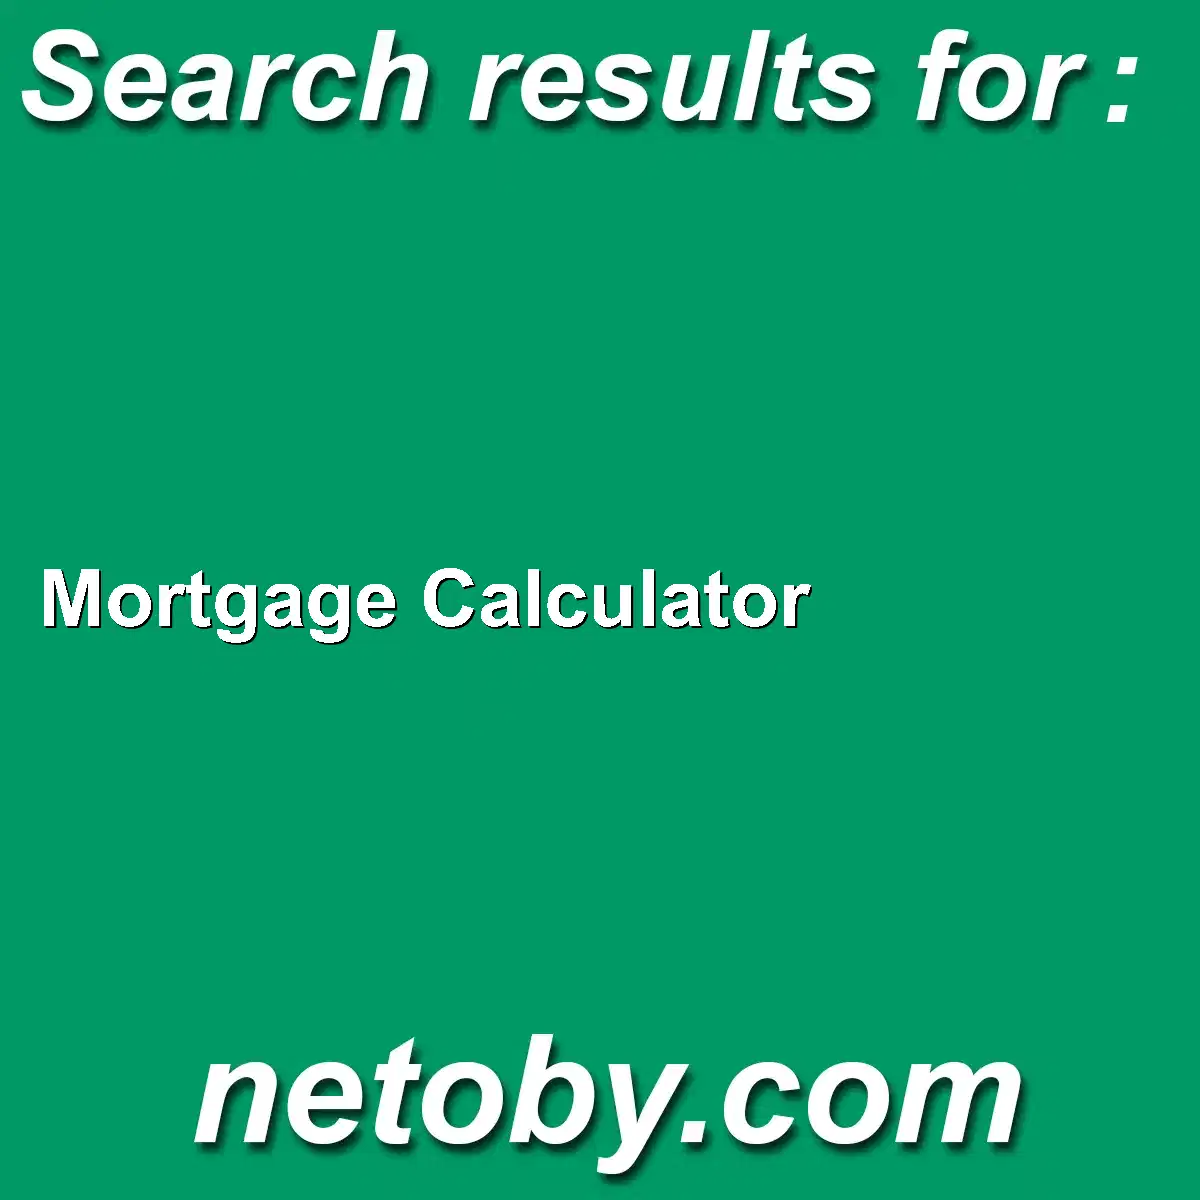 ﻿Mortgage Calculator